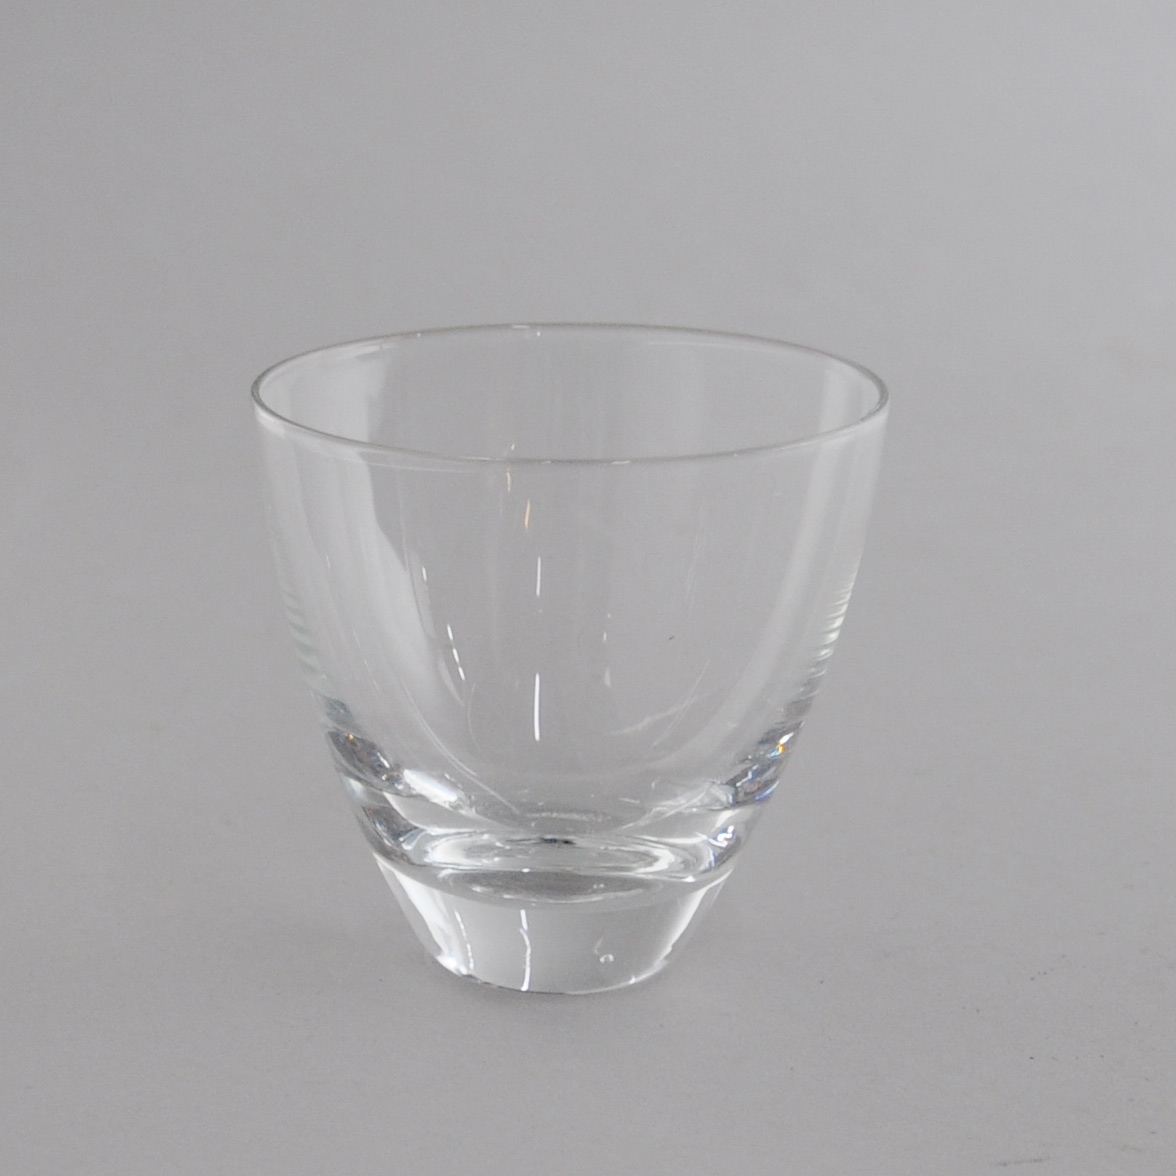 Glass til drikke. Glasset har utadgående kurvet form, med tykk bunn.